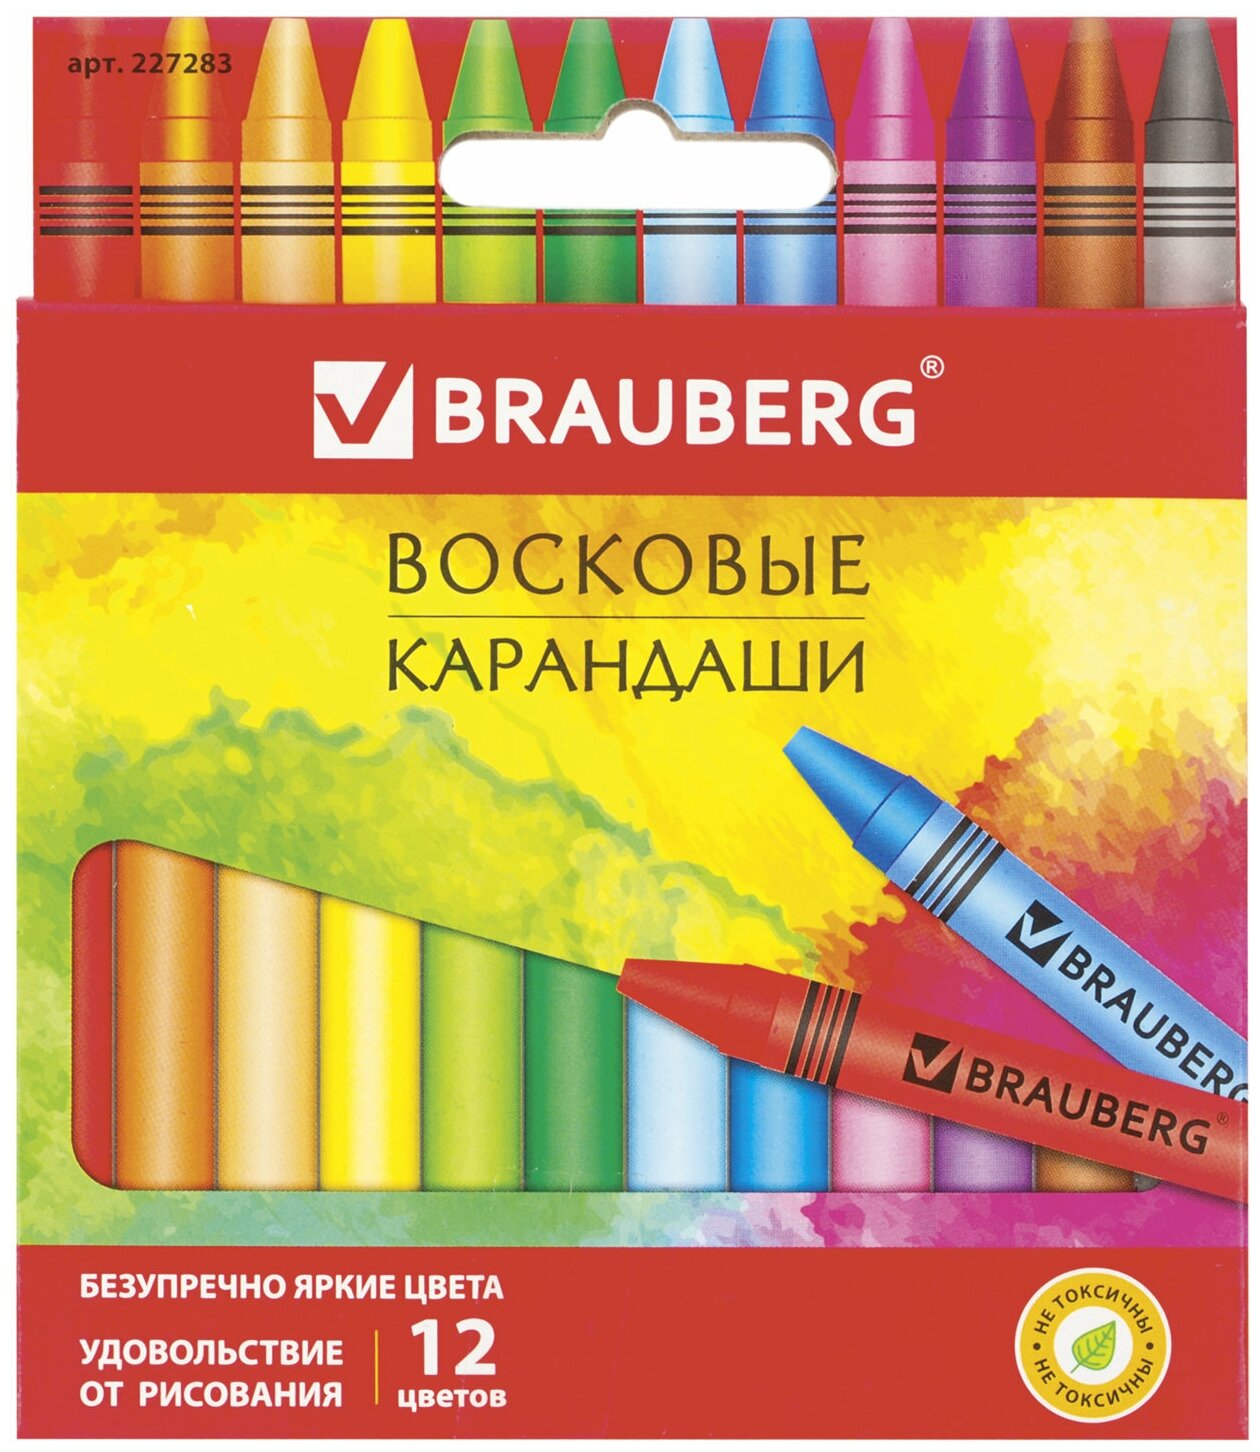 Восковые карандаши Brauberg "Академия", 12 цветов (227283)